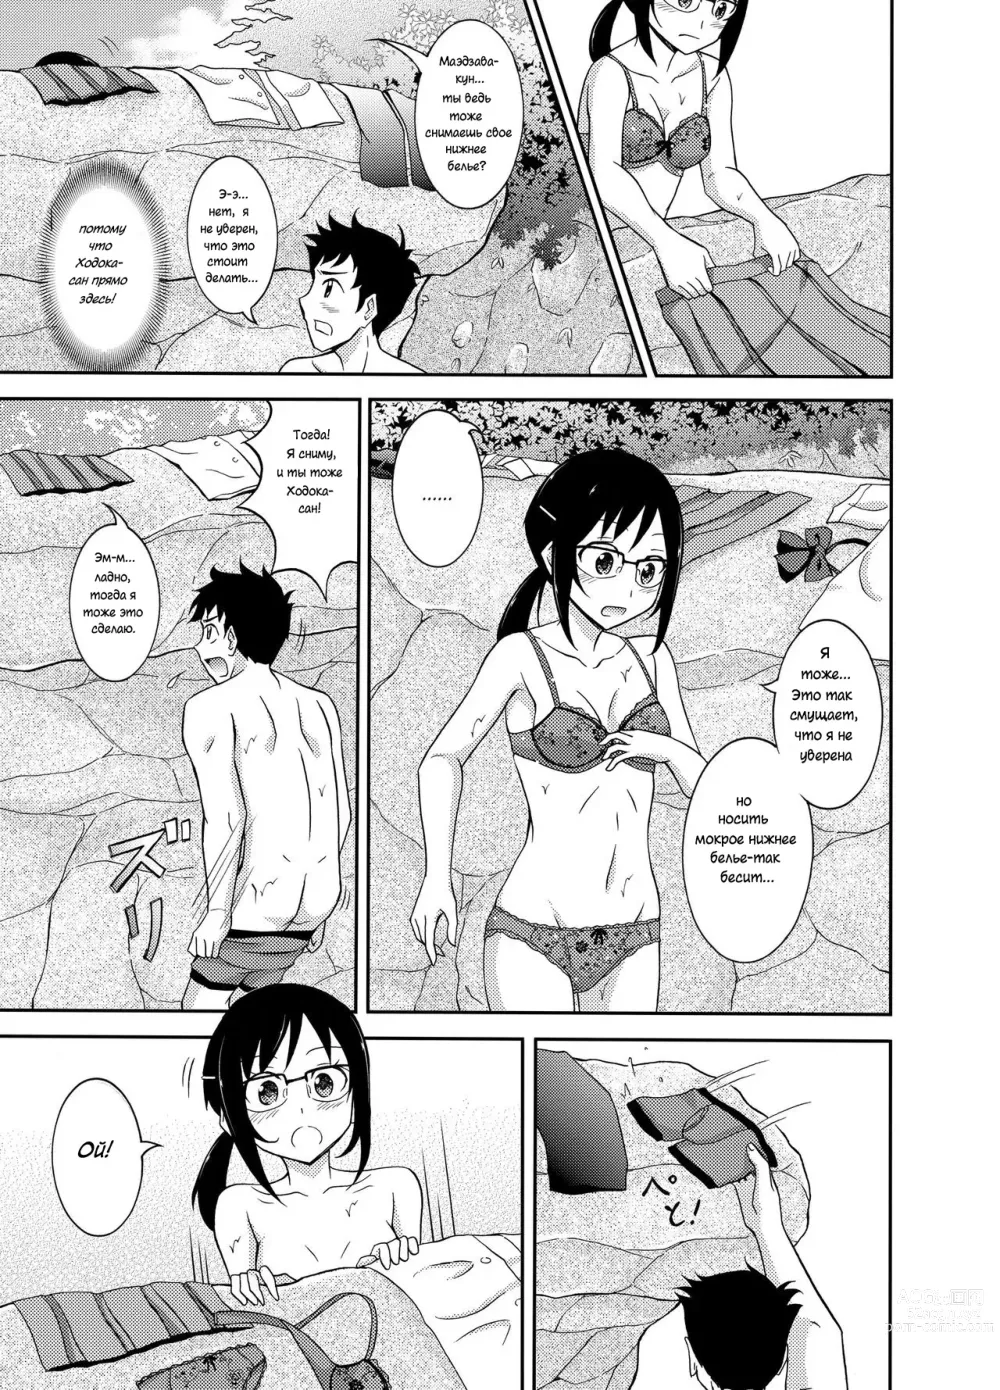 Page 8 of doujinshi Промокшая летняя одежда и то, что последовало дальше